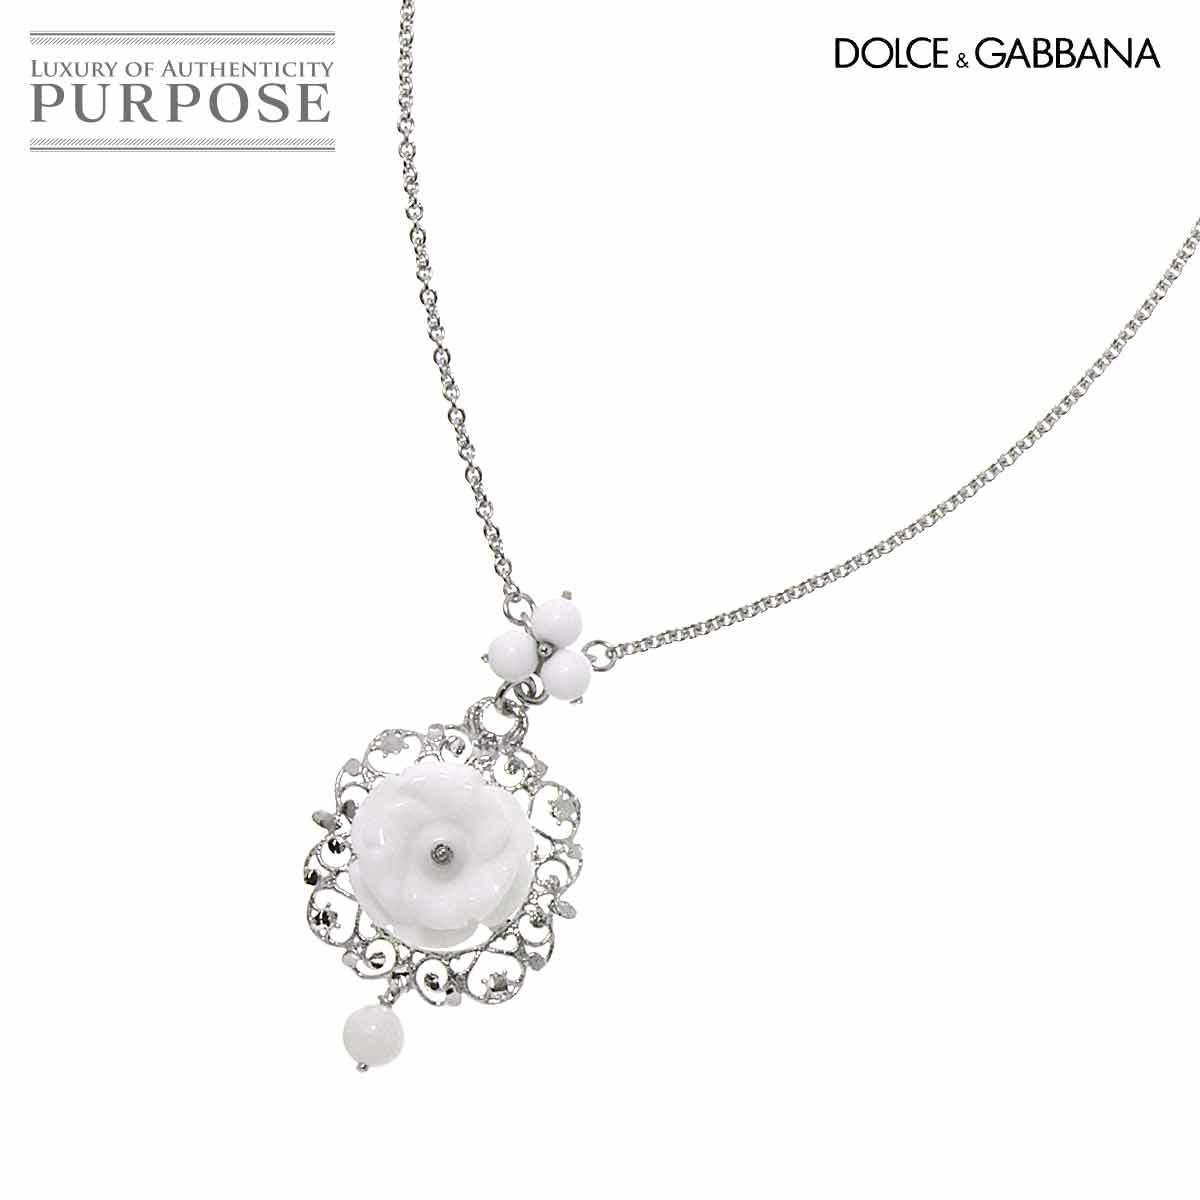 ドルチェ&ガッパーナ DOLCE&GABBANA オパール ネックレス 56cm K18 WG ホワイトゴールド 750 Opal Necklace【証明書】 90196633